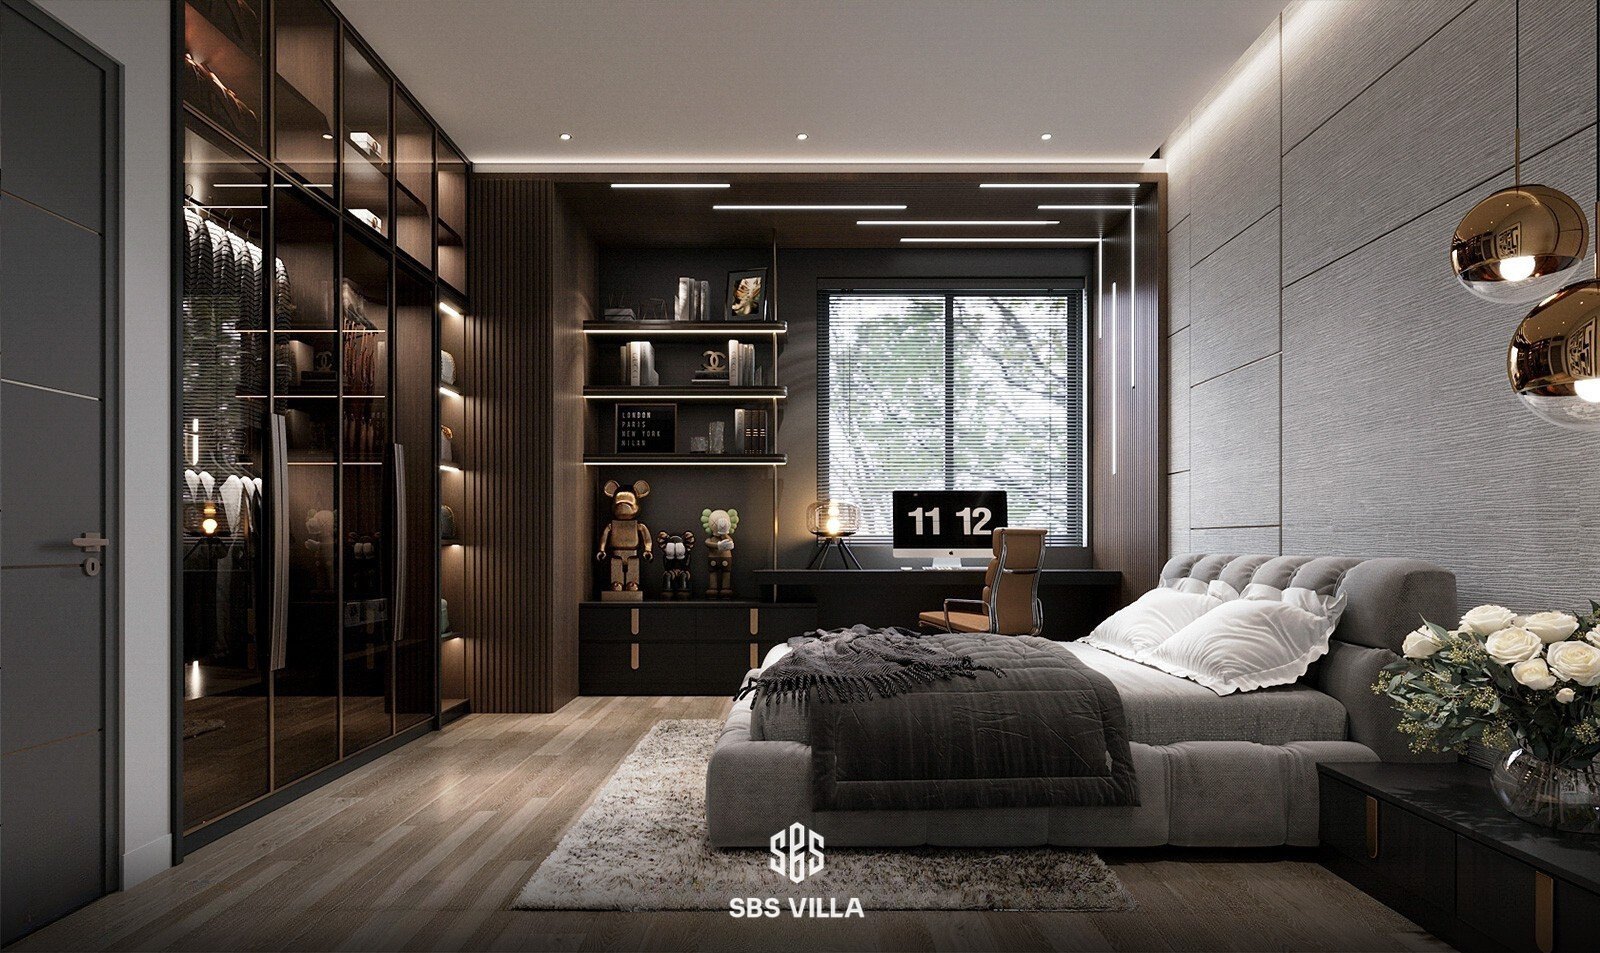 Không gian phòng ngủ sử dụng chất liệu gỗ tạo cảm giác sang trọng, ấm cúng